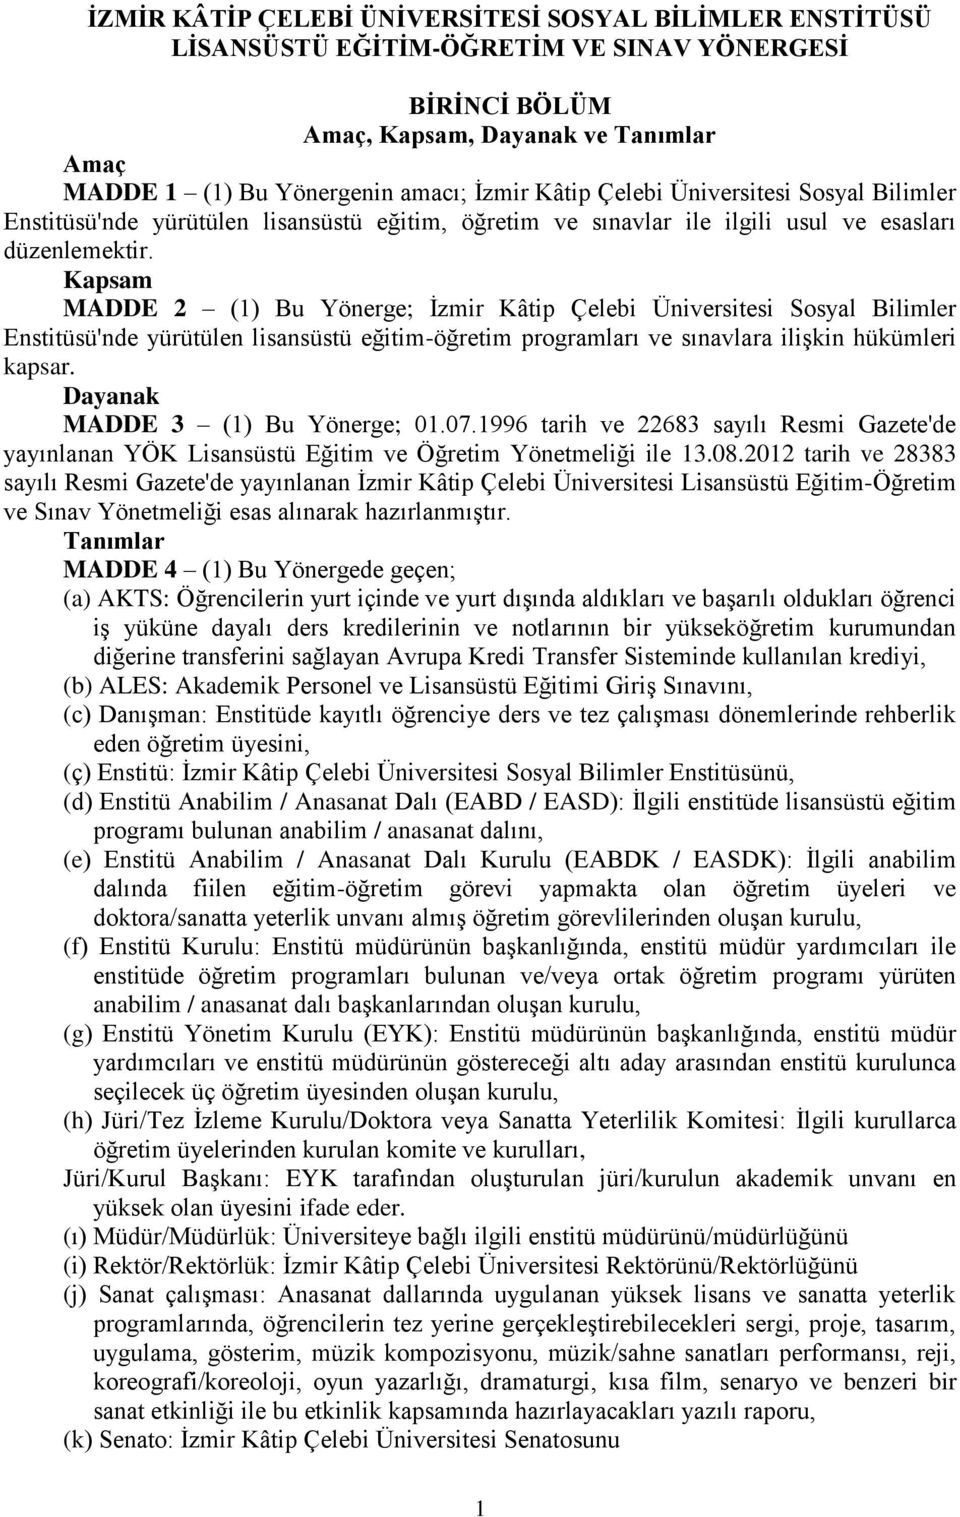 Kapsam MADDE 2 (1) Bu Yönerge; İzmir Kâtip Çelebi Üniversitesi Sosyal Bilimler Enstitüsü'nde yürütülen lisansüstü eğitim-öğretim programları ve sınavlara ilişkin hükümleri kapsar.